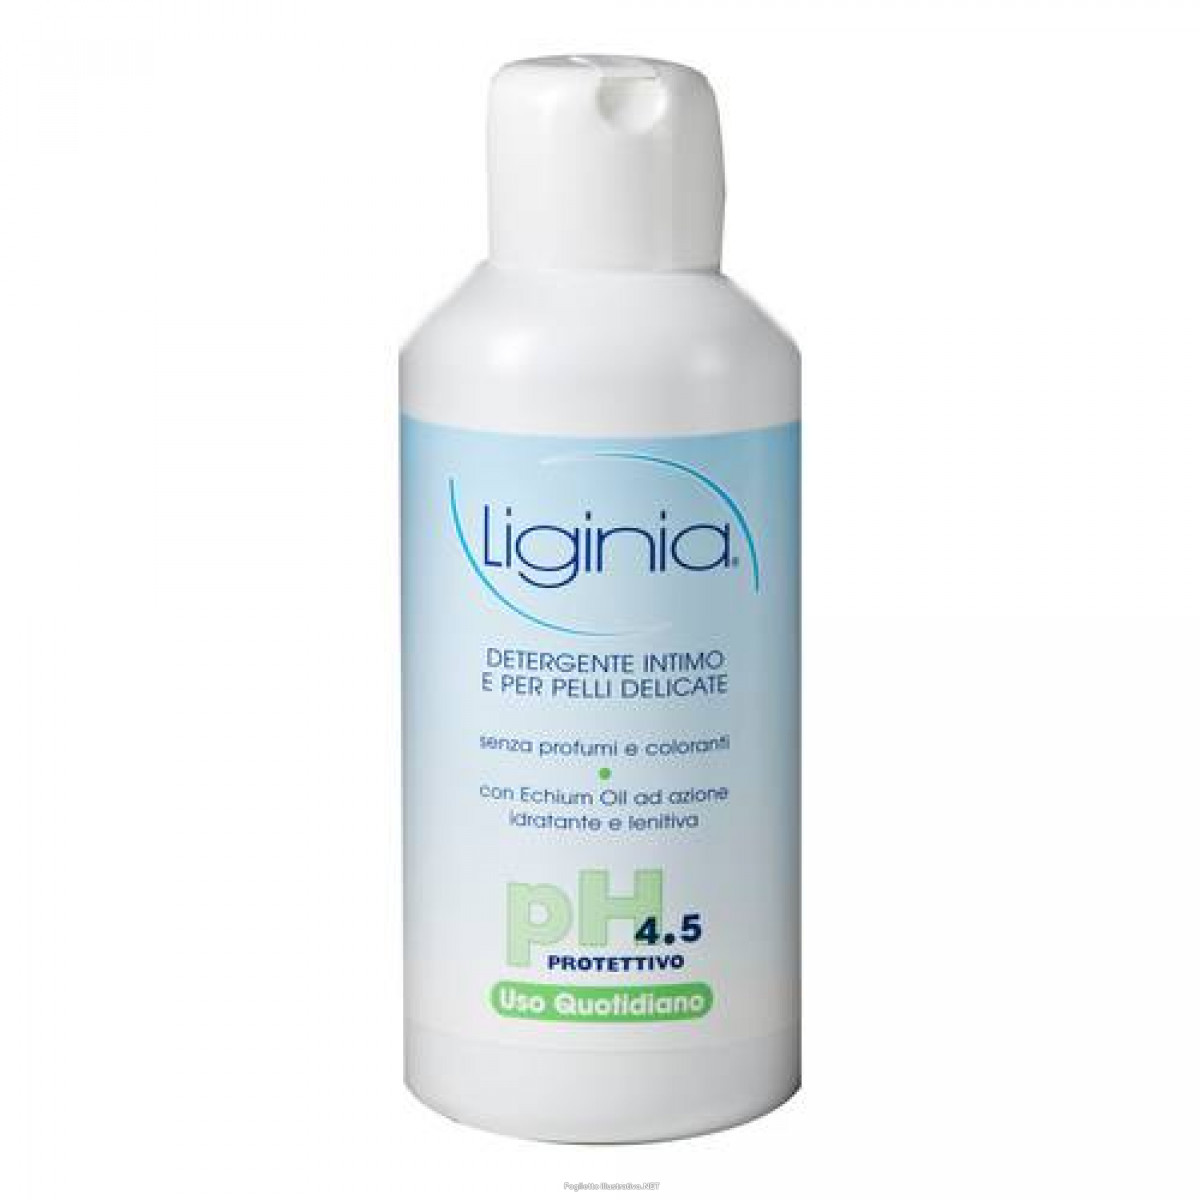 Detergente Intimo PH 4,5 Liginia(R) 500ml